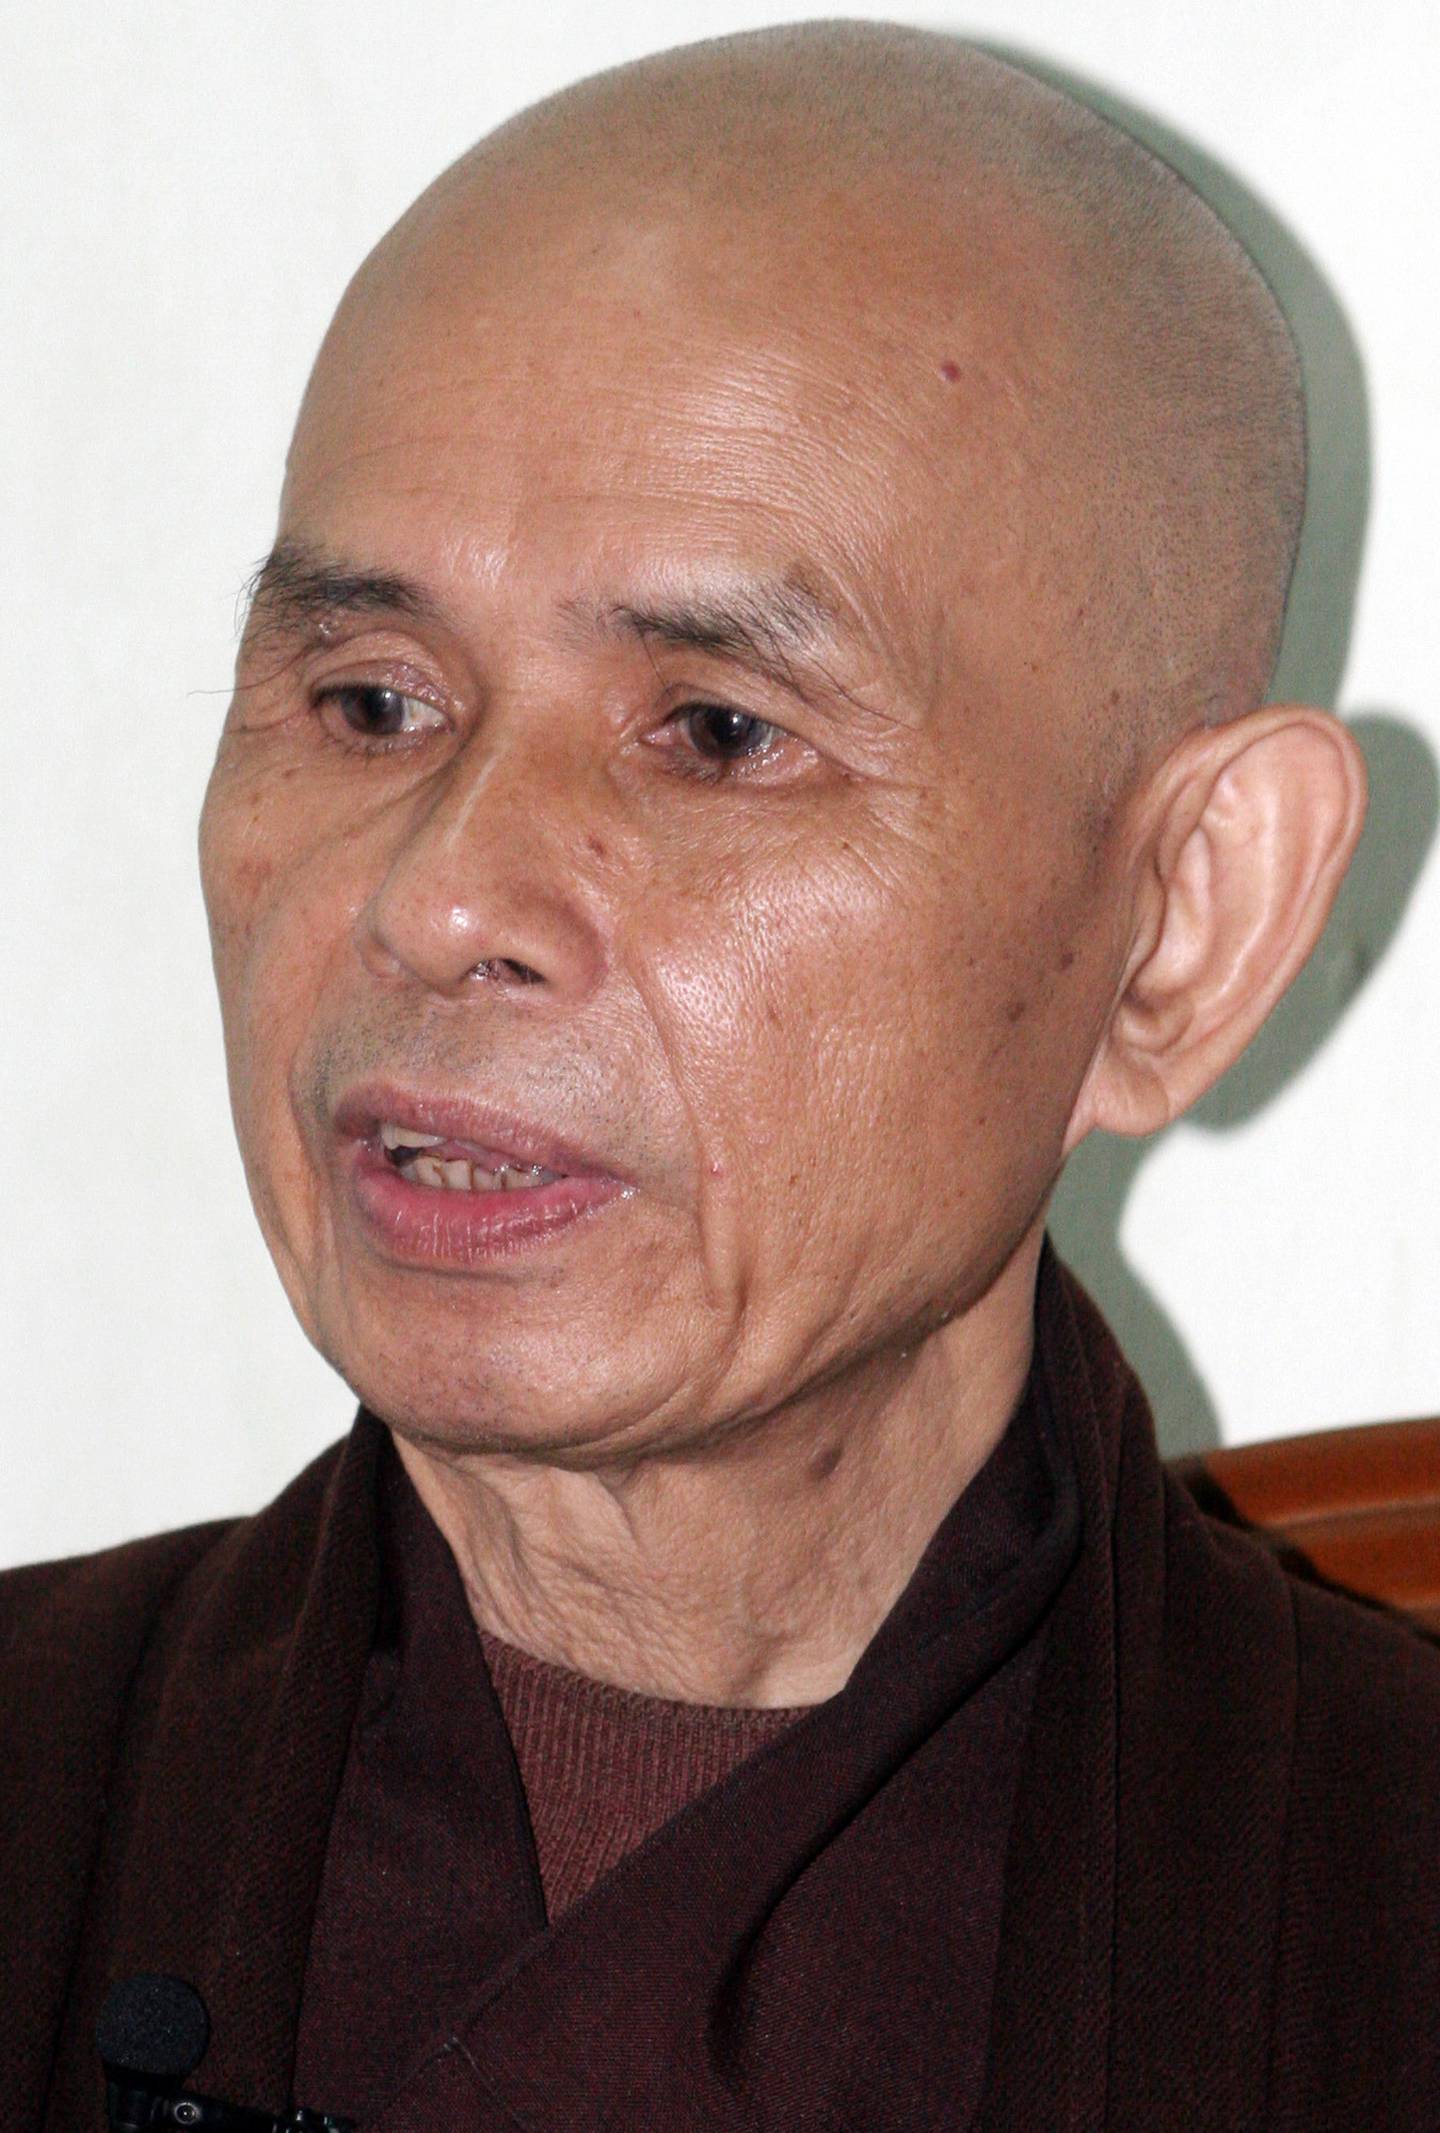 Den vietnamesiske fredsaktivisten og buddhistmunken Thich Nhat Hanh har bidratt til mindfulnessbølgen.